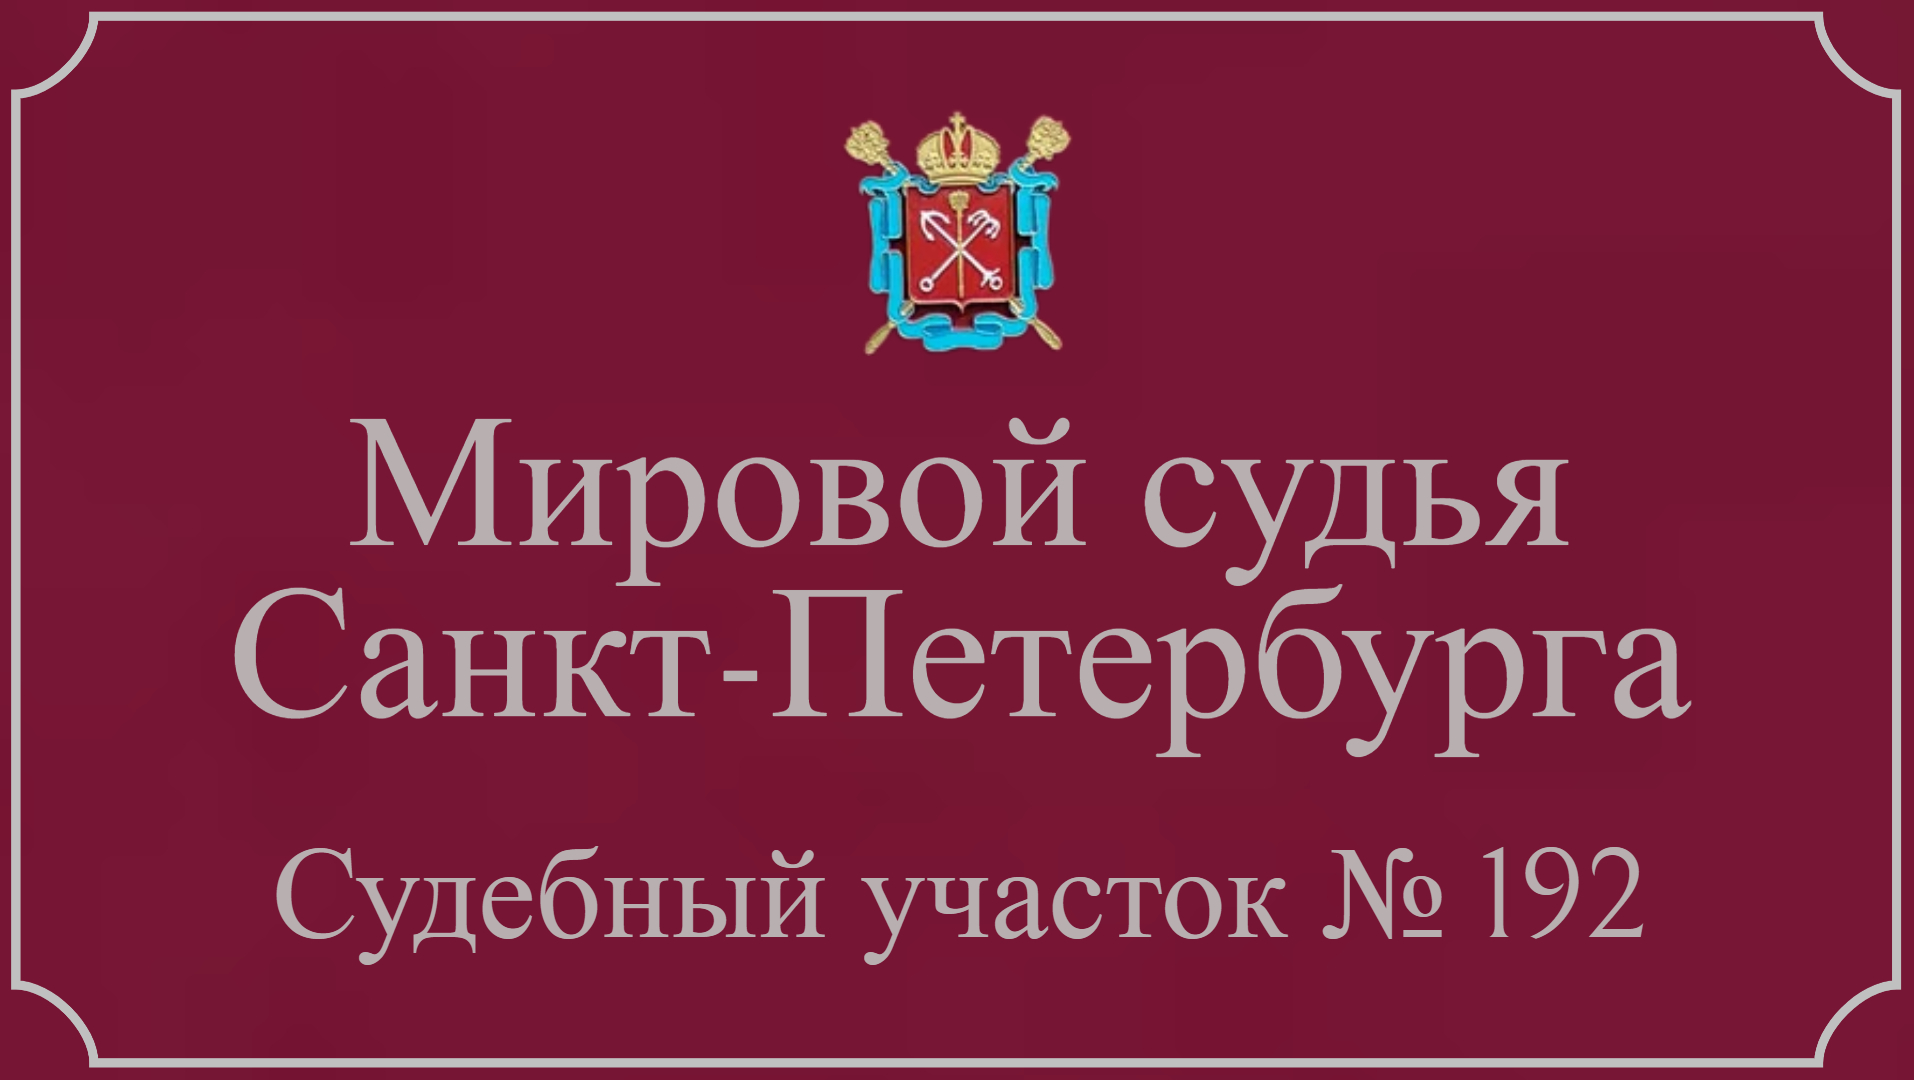 Информация по 192 судебному участку в Санкт-Петербурге.